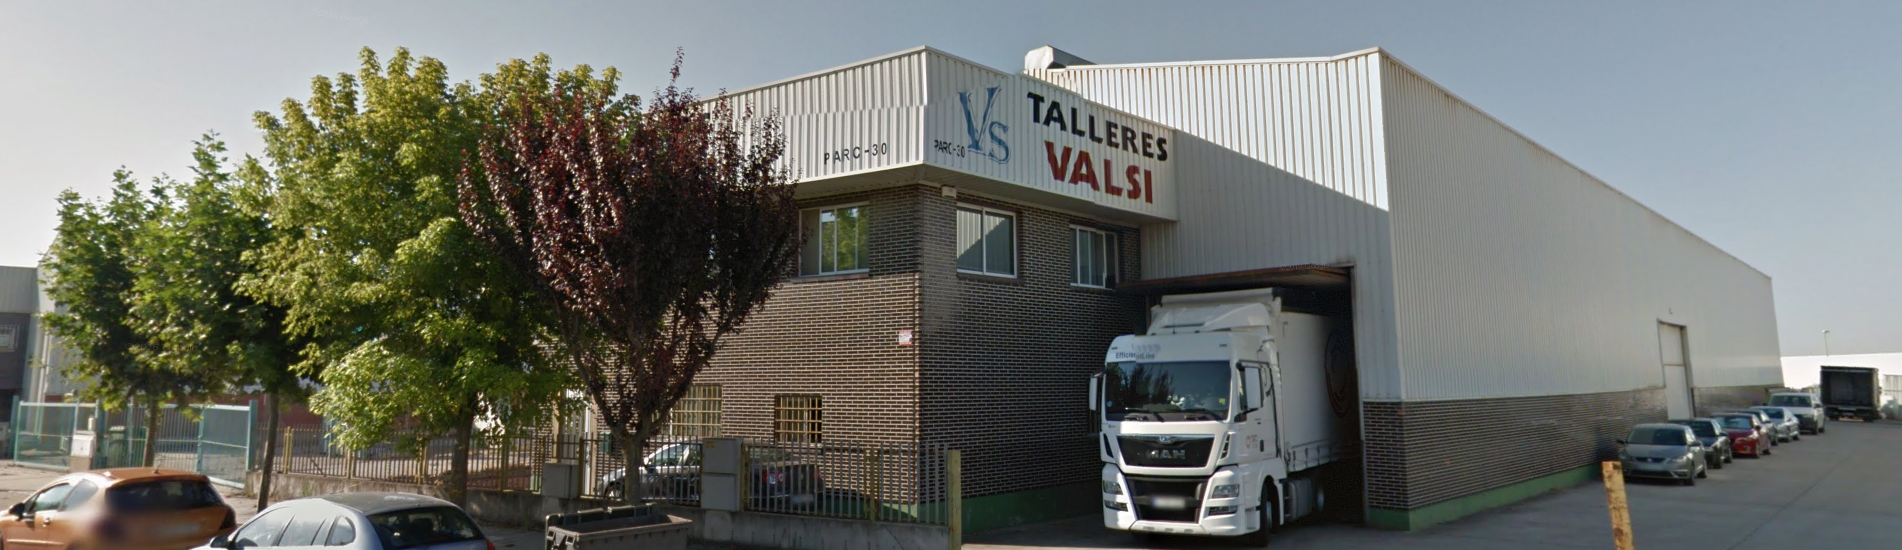 Talleres Valsi Calderera industrial en Valladolid